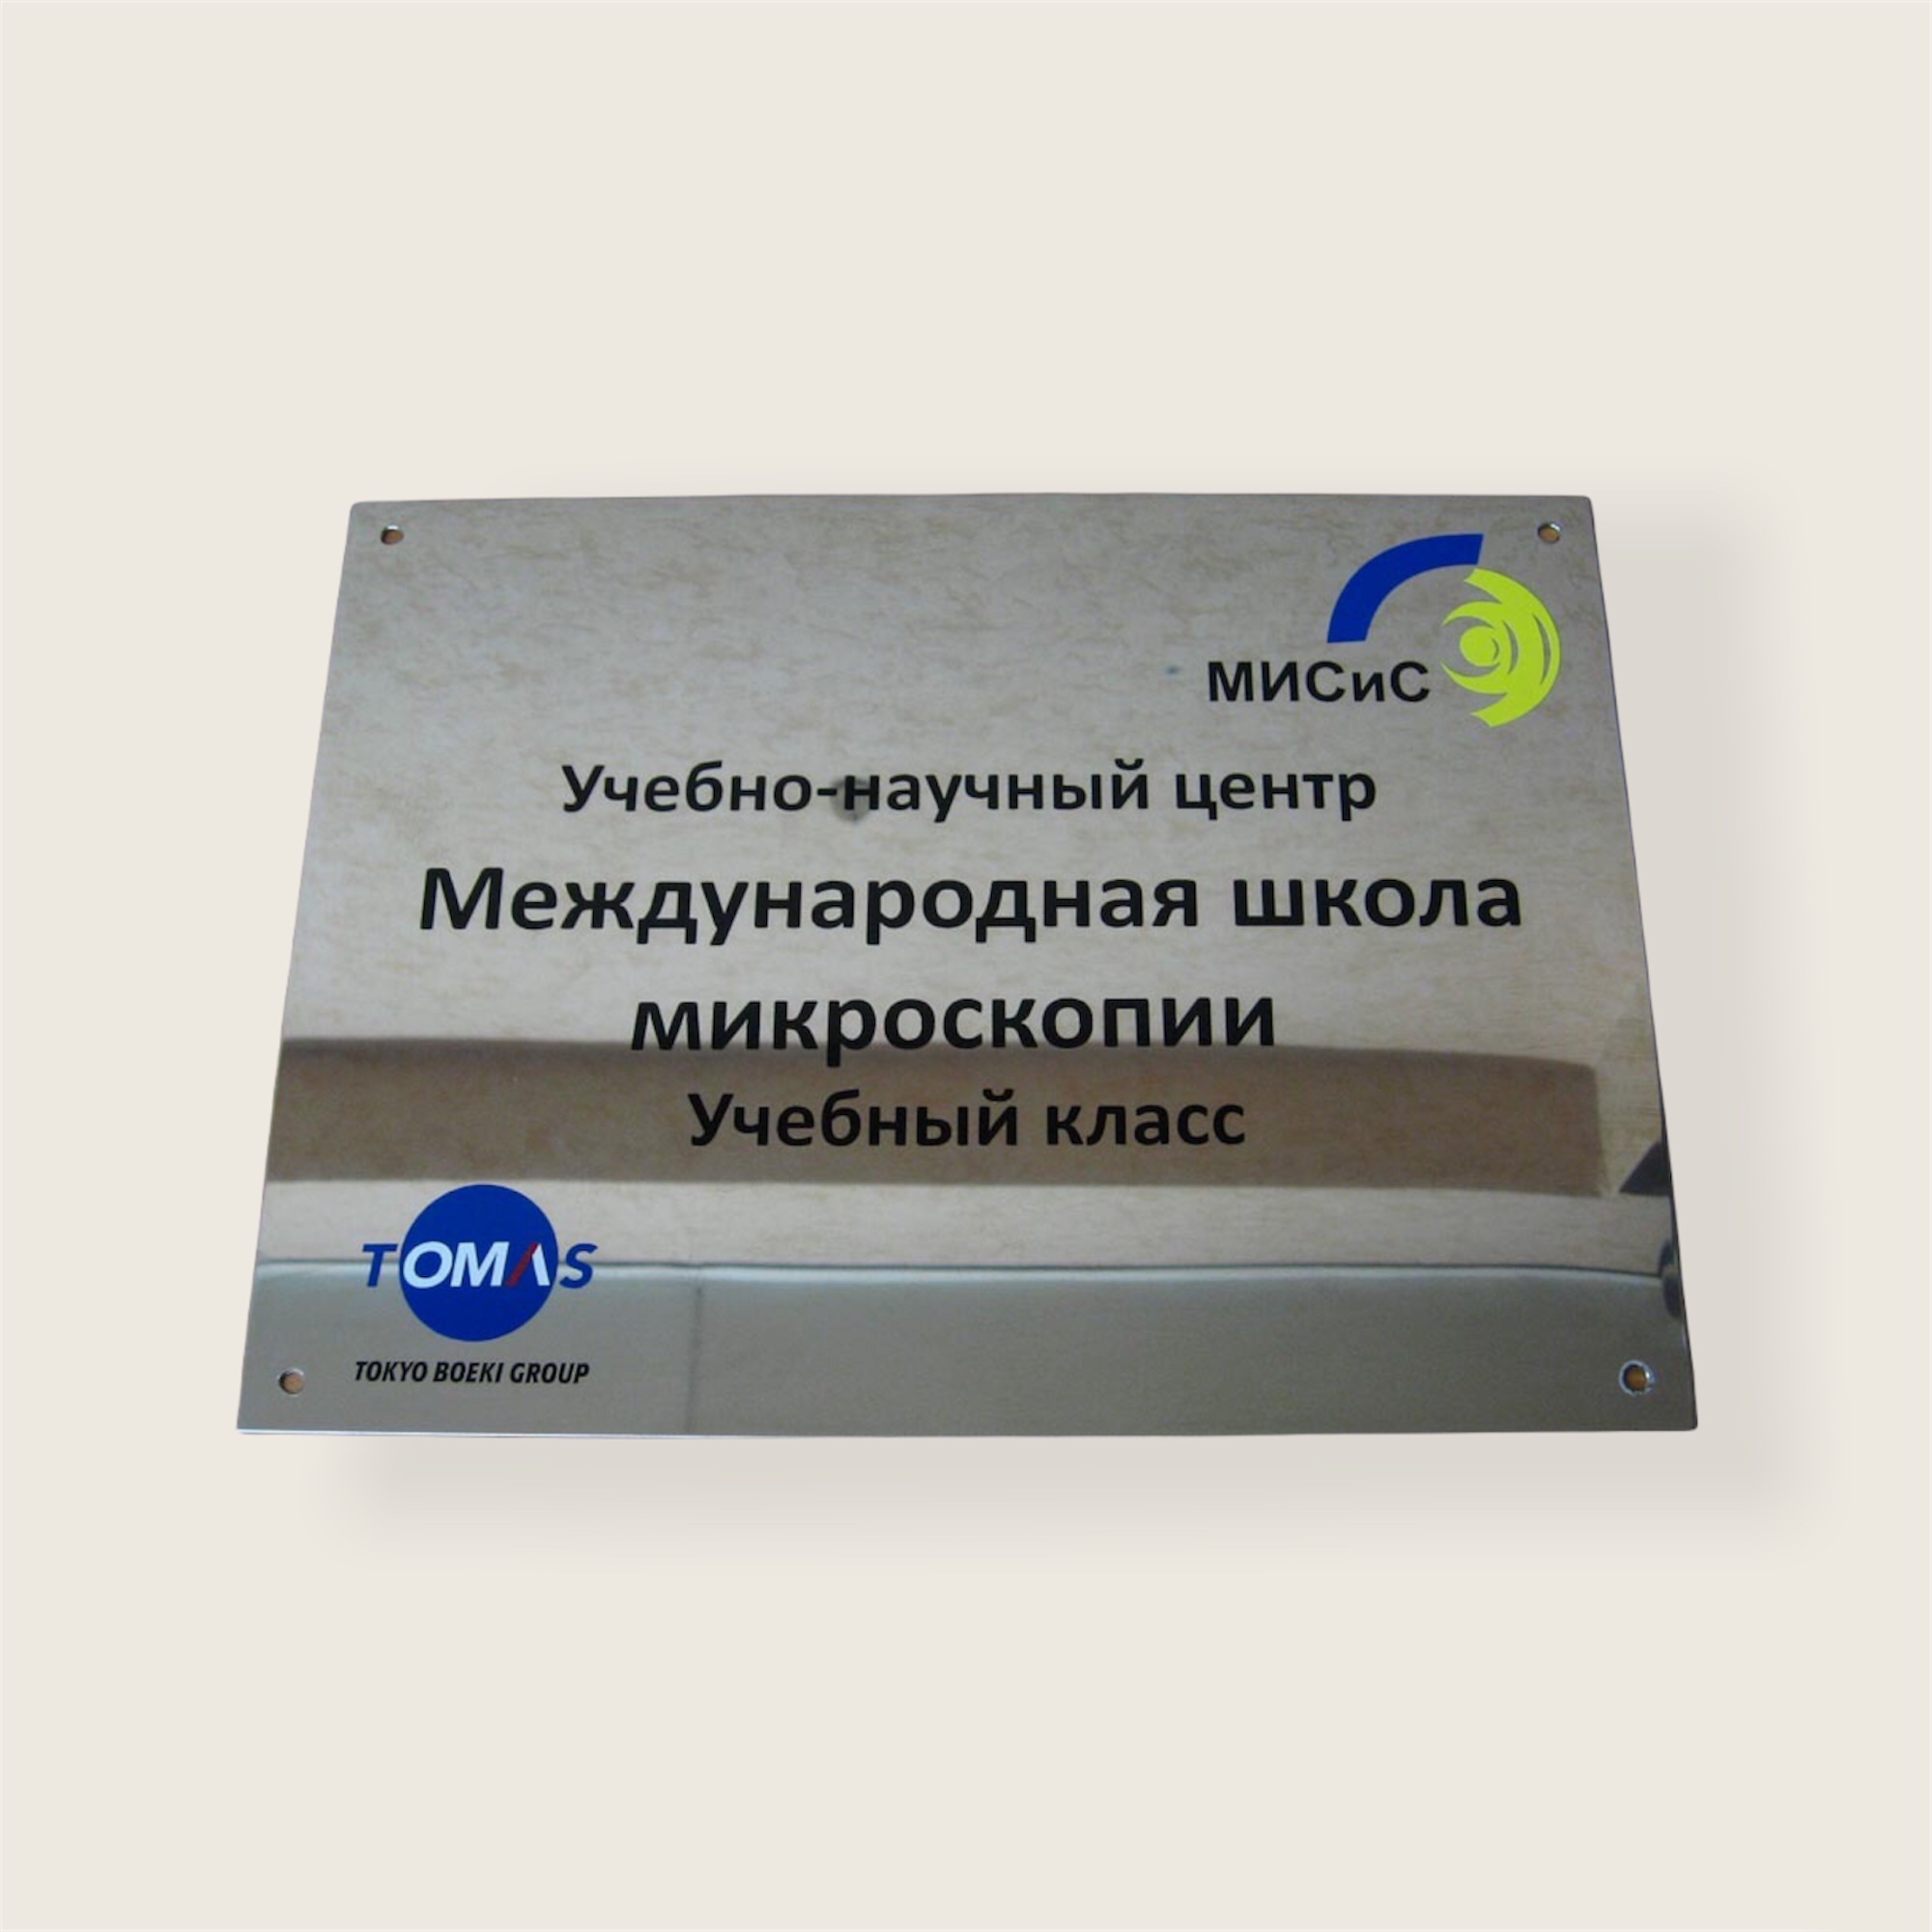 Офисная табличка из нержавеющей стали для международной школы микроскопии. Аппликация пленками Oracal 641.